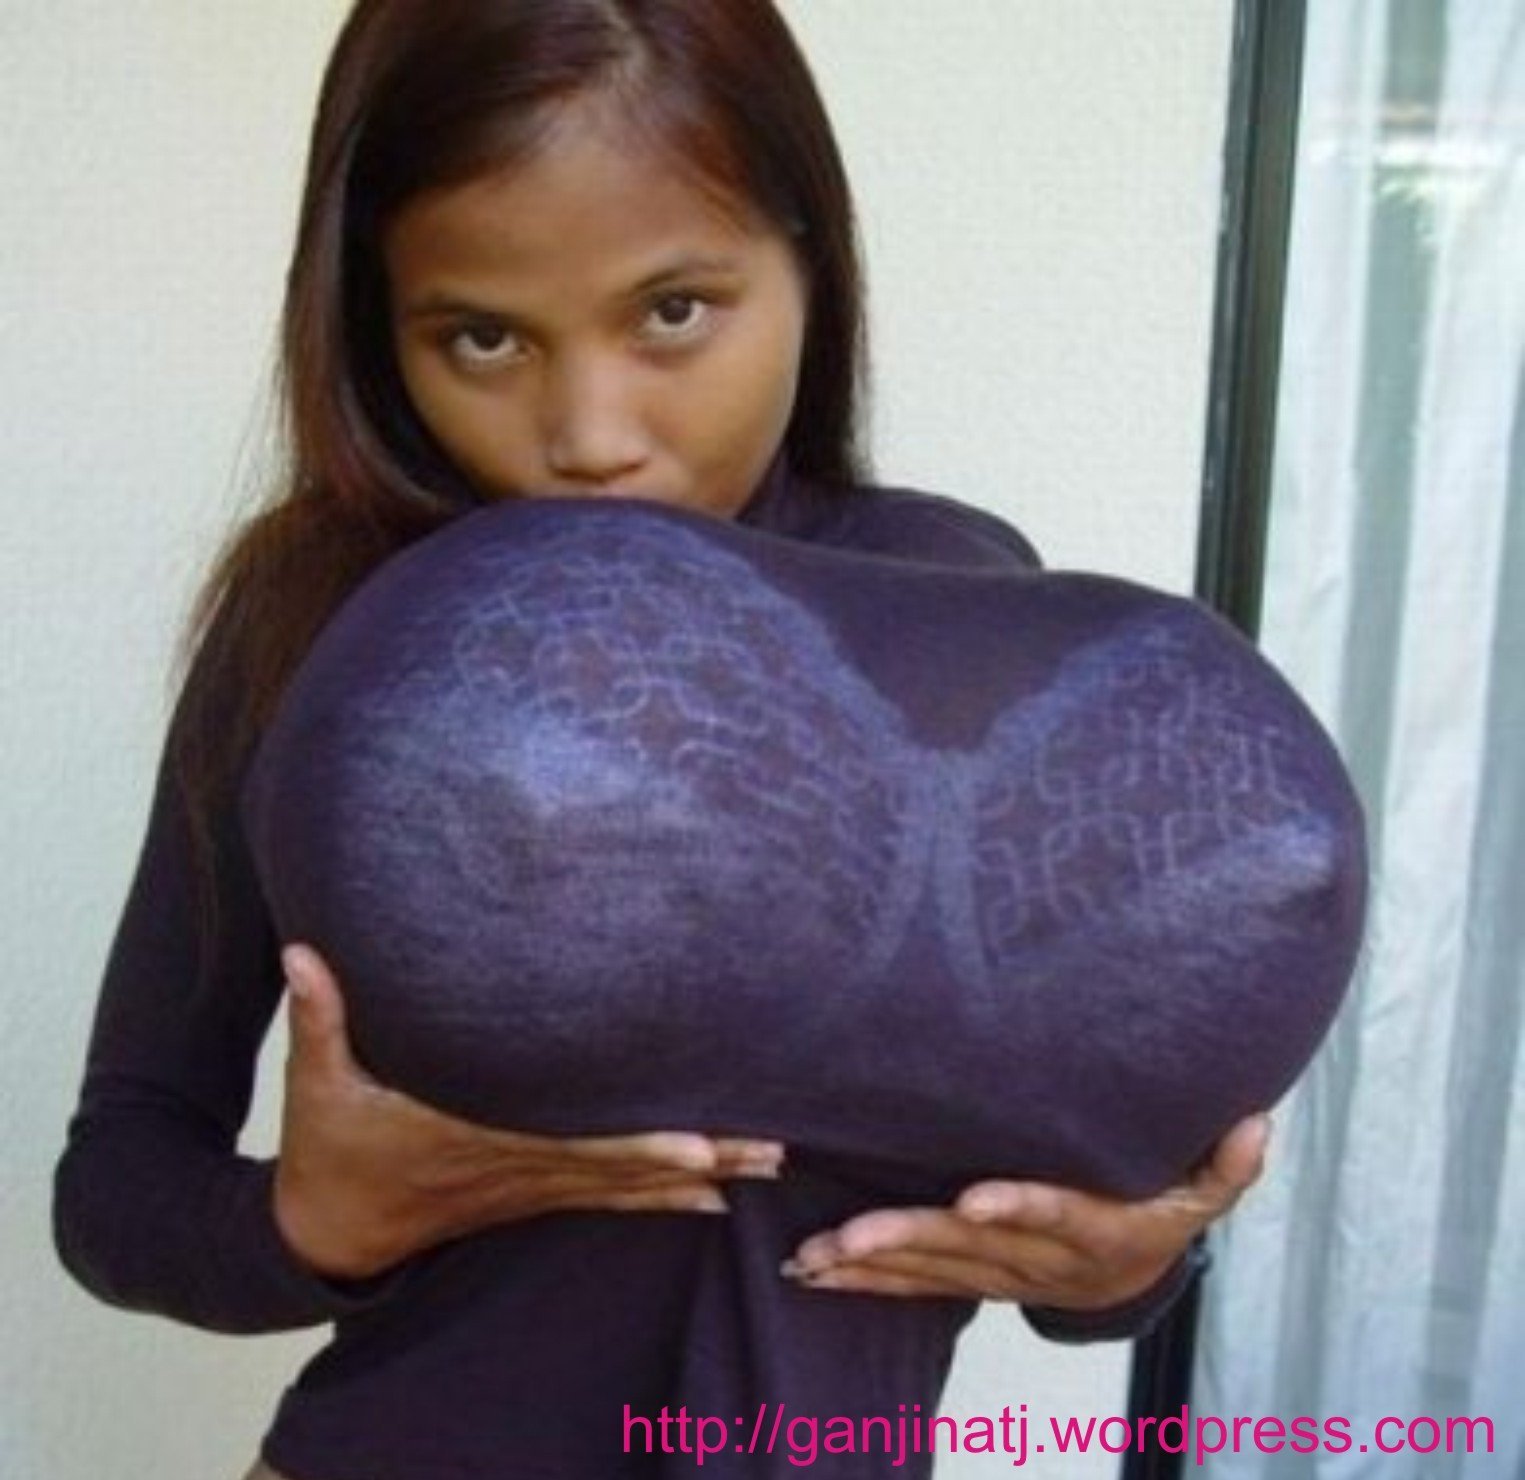 азиатка с самой в мире огромной грудью фото 33